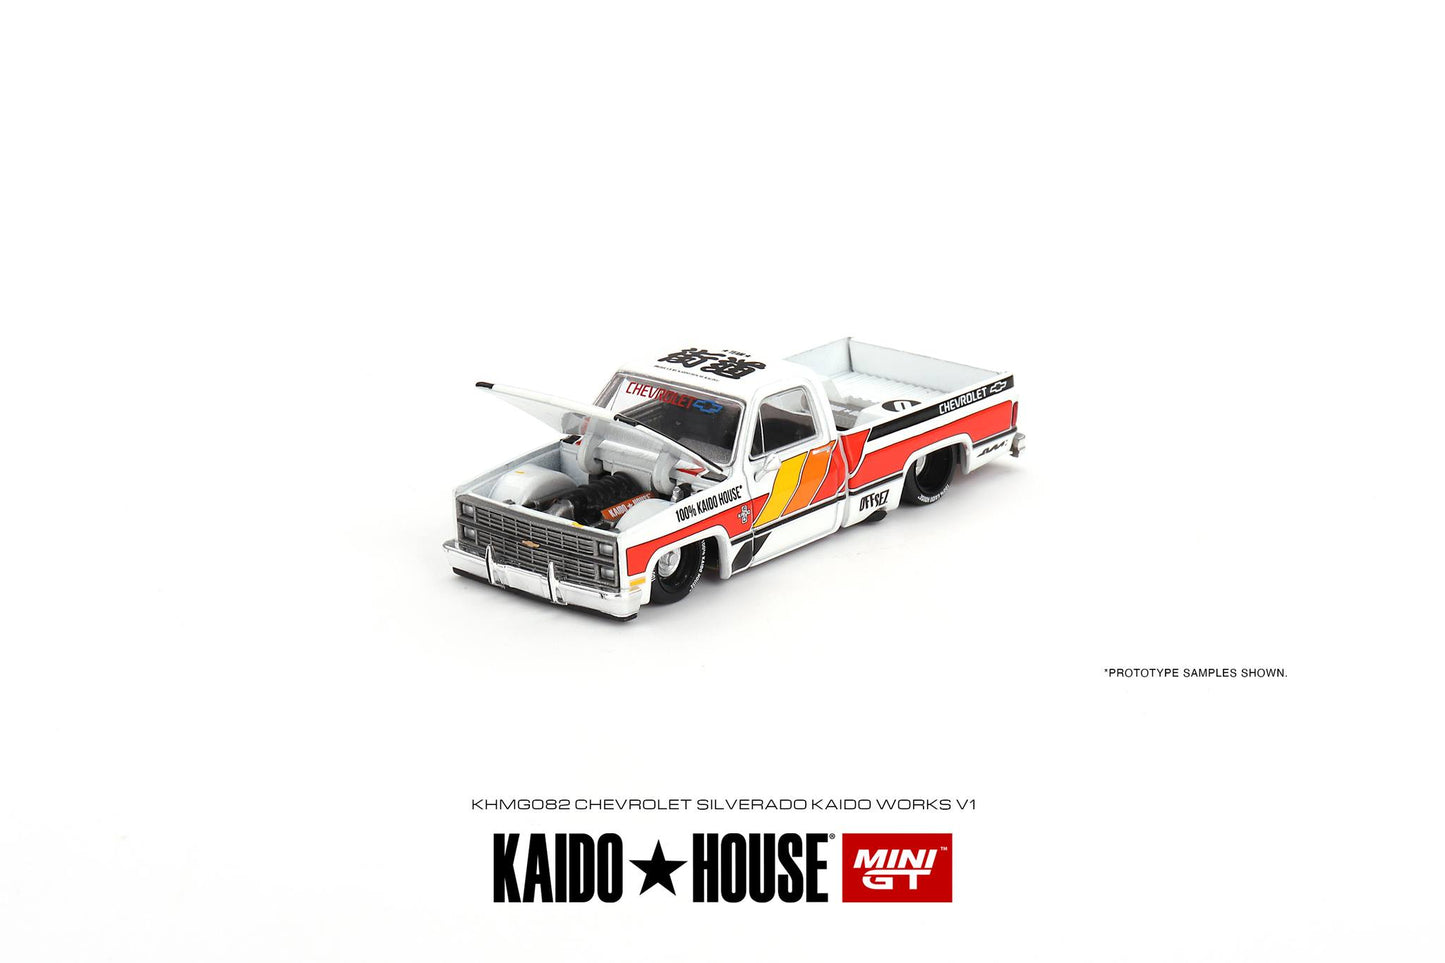 Mini GT x Kaido House 1983 Chevy Silverado Kaido Works V1